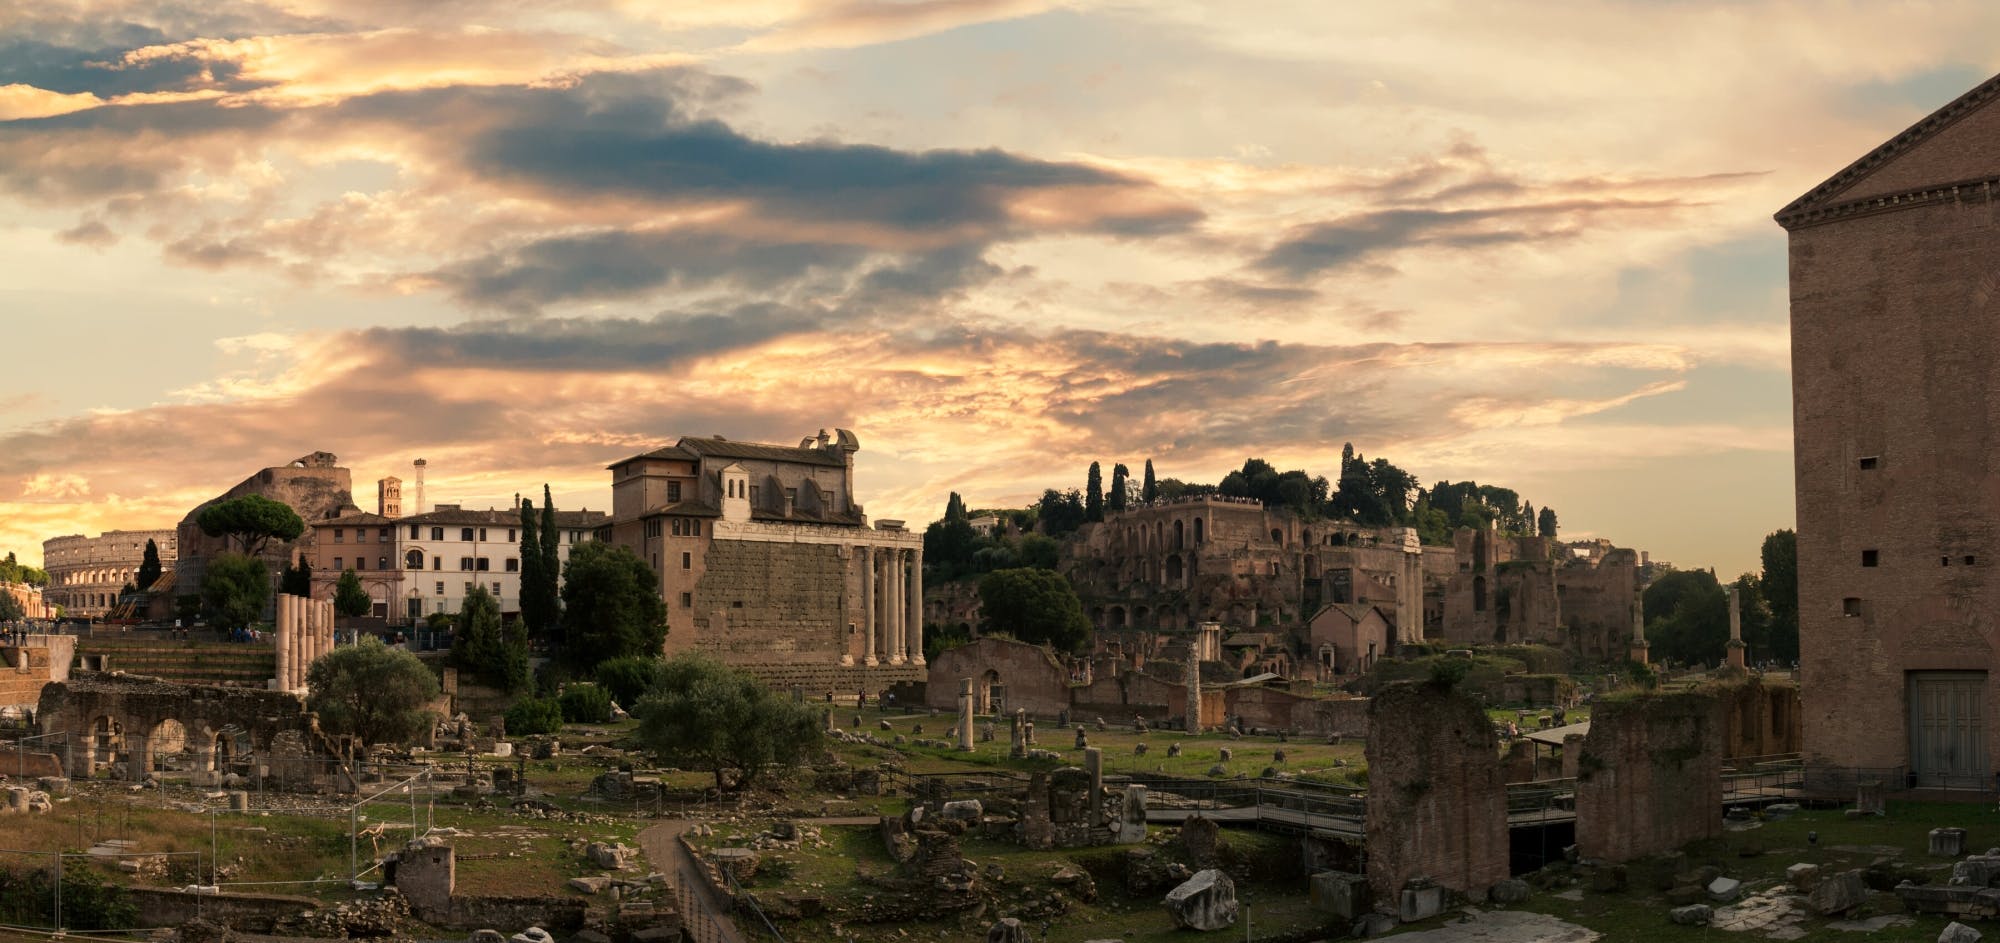 Führung durch das Forum Romanum, den Palatin und die römische Domus